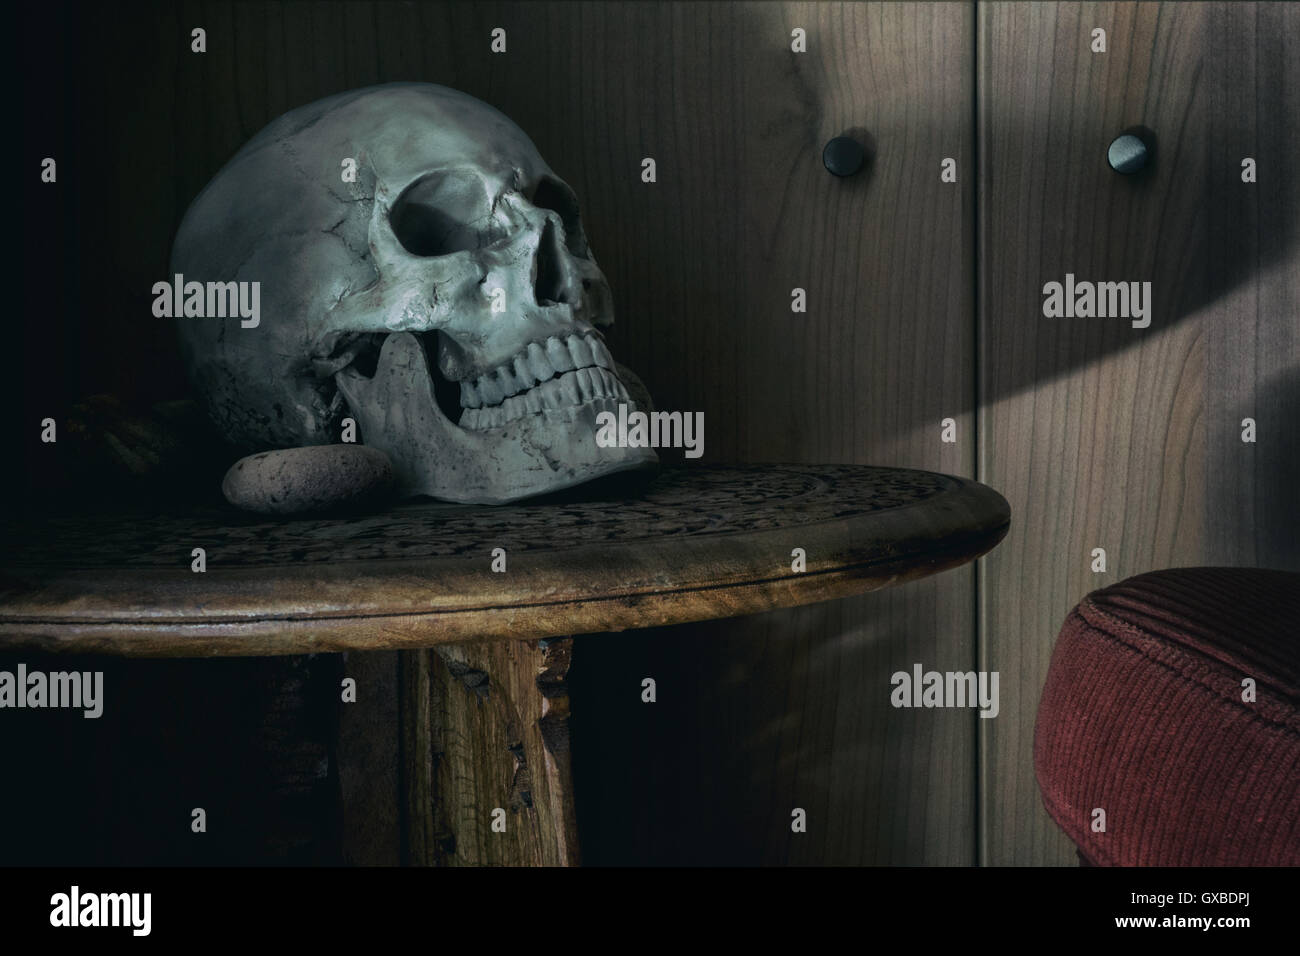 La fotografía de modos de vida con cráneo humano Foto de stock